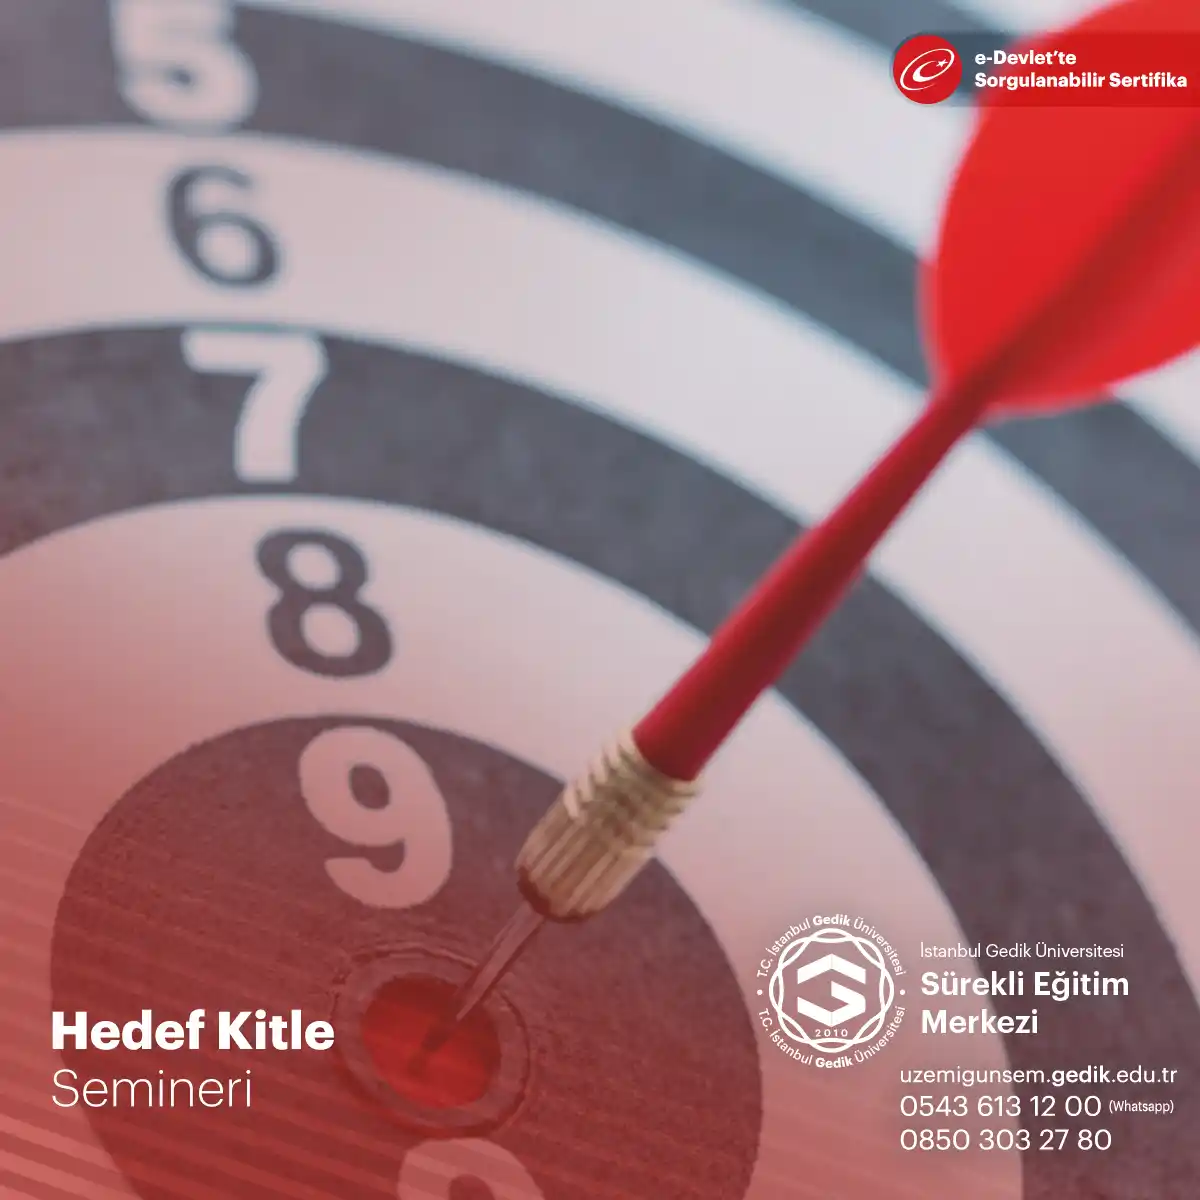 Hedef Kitle Semineri, pazarlama profesyonelleri ve işletme sahipleri için önemli bir bilgi kaynağıdır.